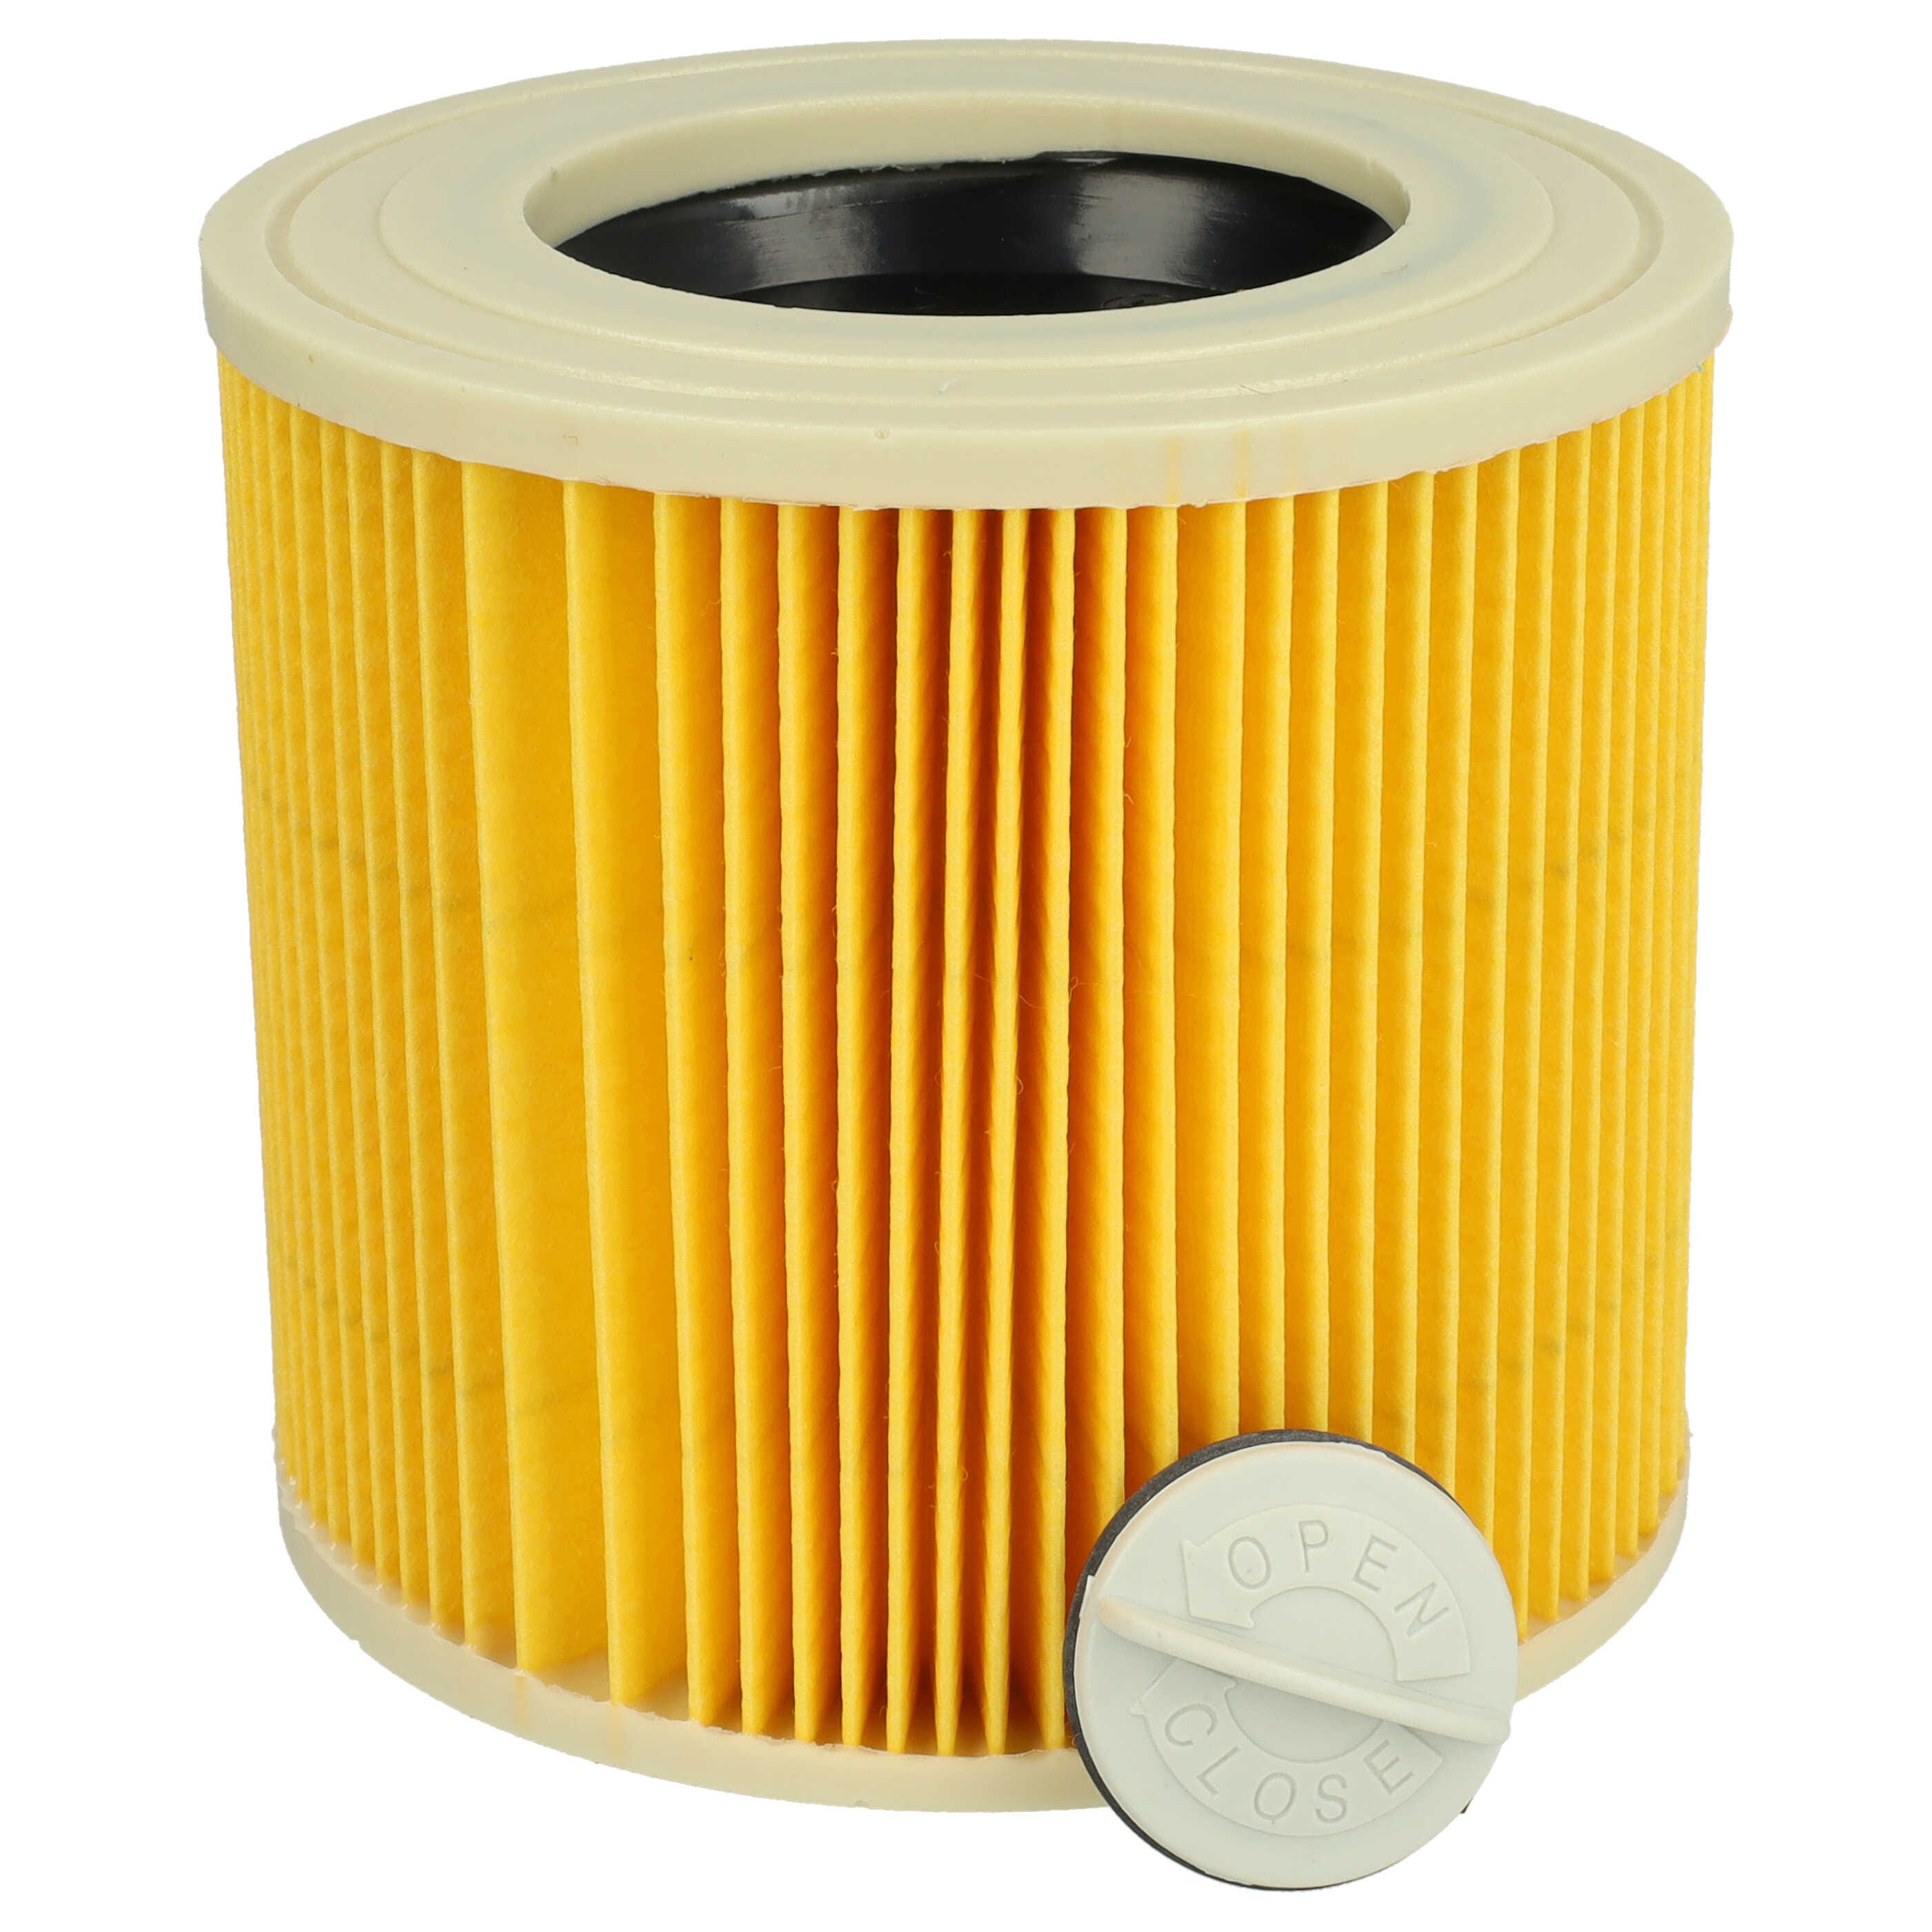 Vhbw filtro cartucce compatibile con aspirapolvere aspiraliquidi Kärcher WD  3.300 M, WD 3.500 P, WD 3.600, WD 3200 AF, WD 3600 como 6.414-552.0.